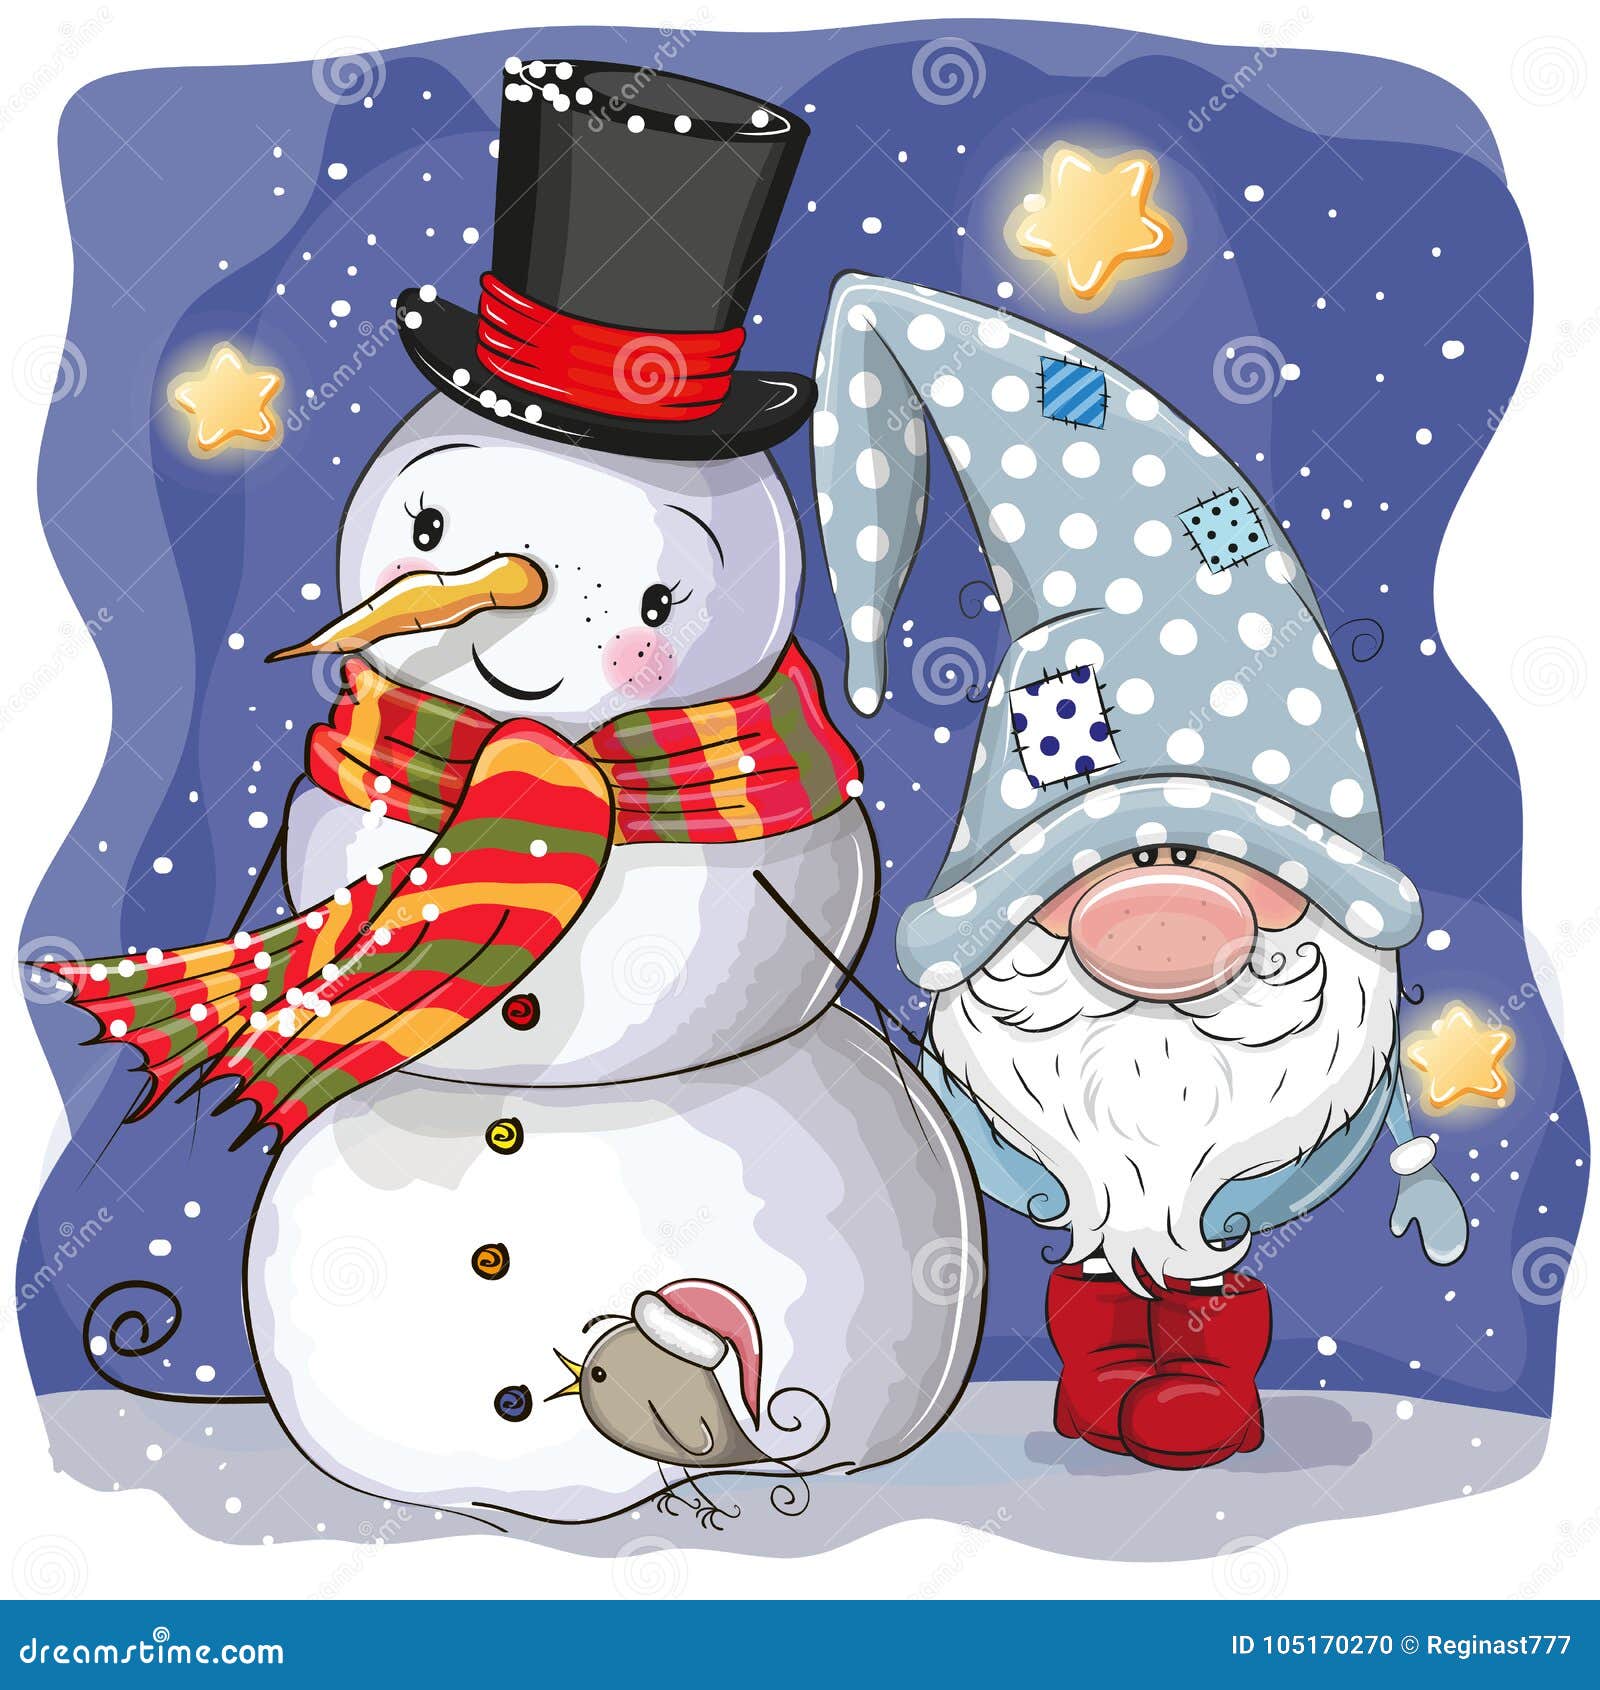 cute cartoon gnome and snowman